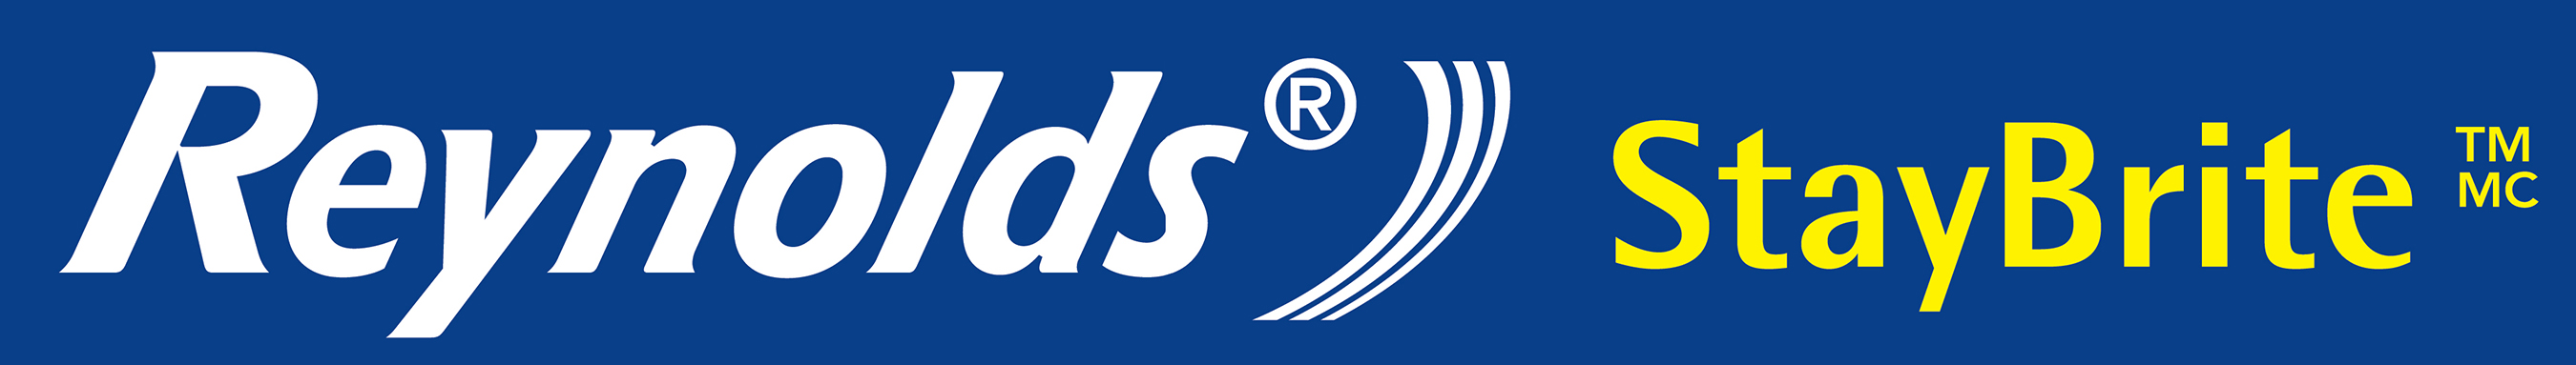 Reynolds StayBrite logo